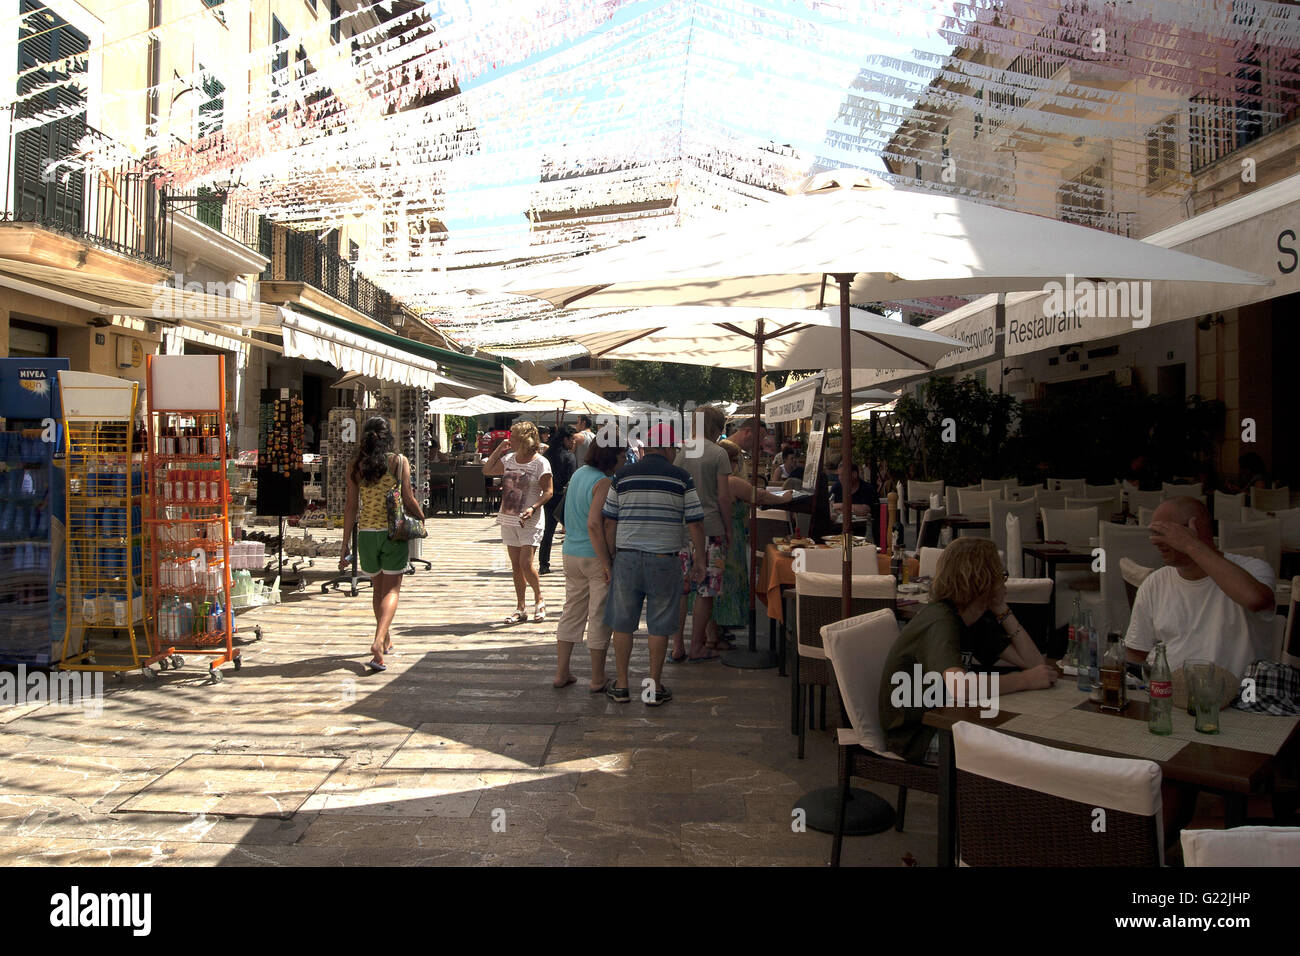 ein schönes Foto von einer belebten touristischen Straße mit Cafés und Souvenirläden in Palma De Mallorca, Spanien, am Meer, Tourismus, Urlaub Stockfoto